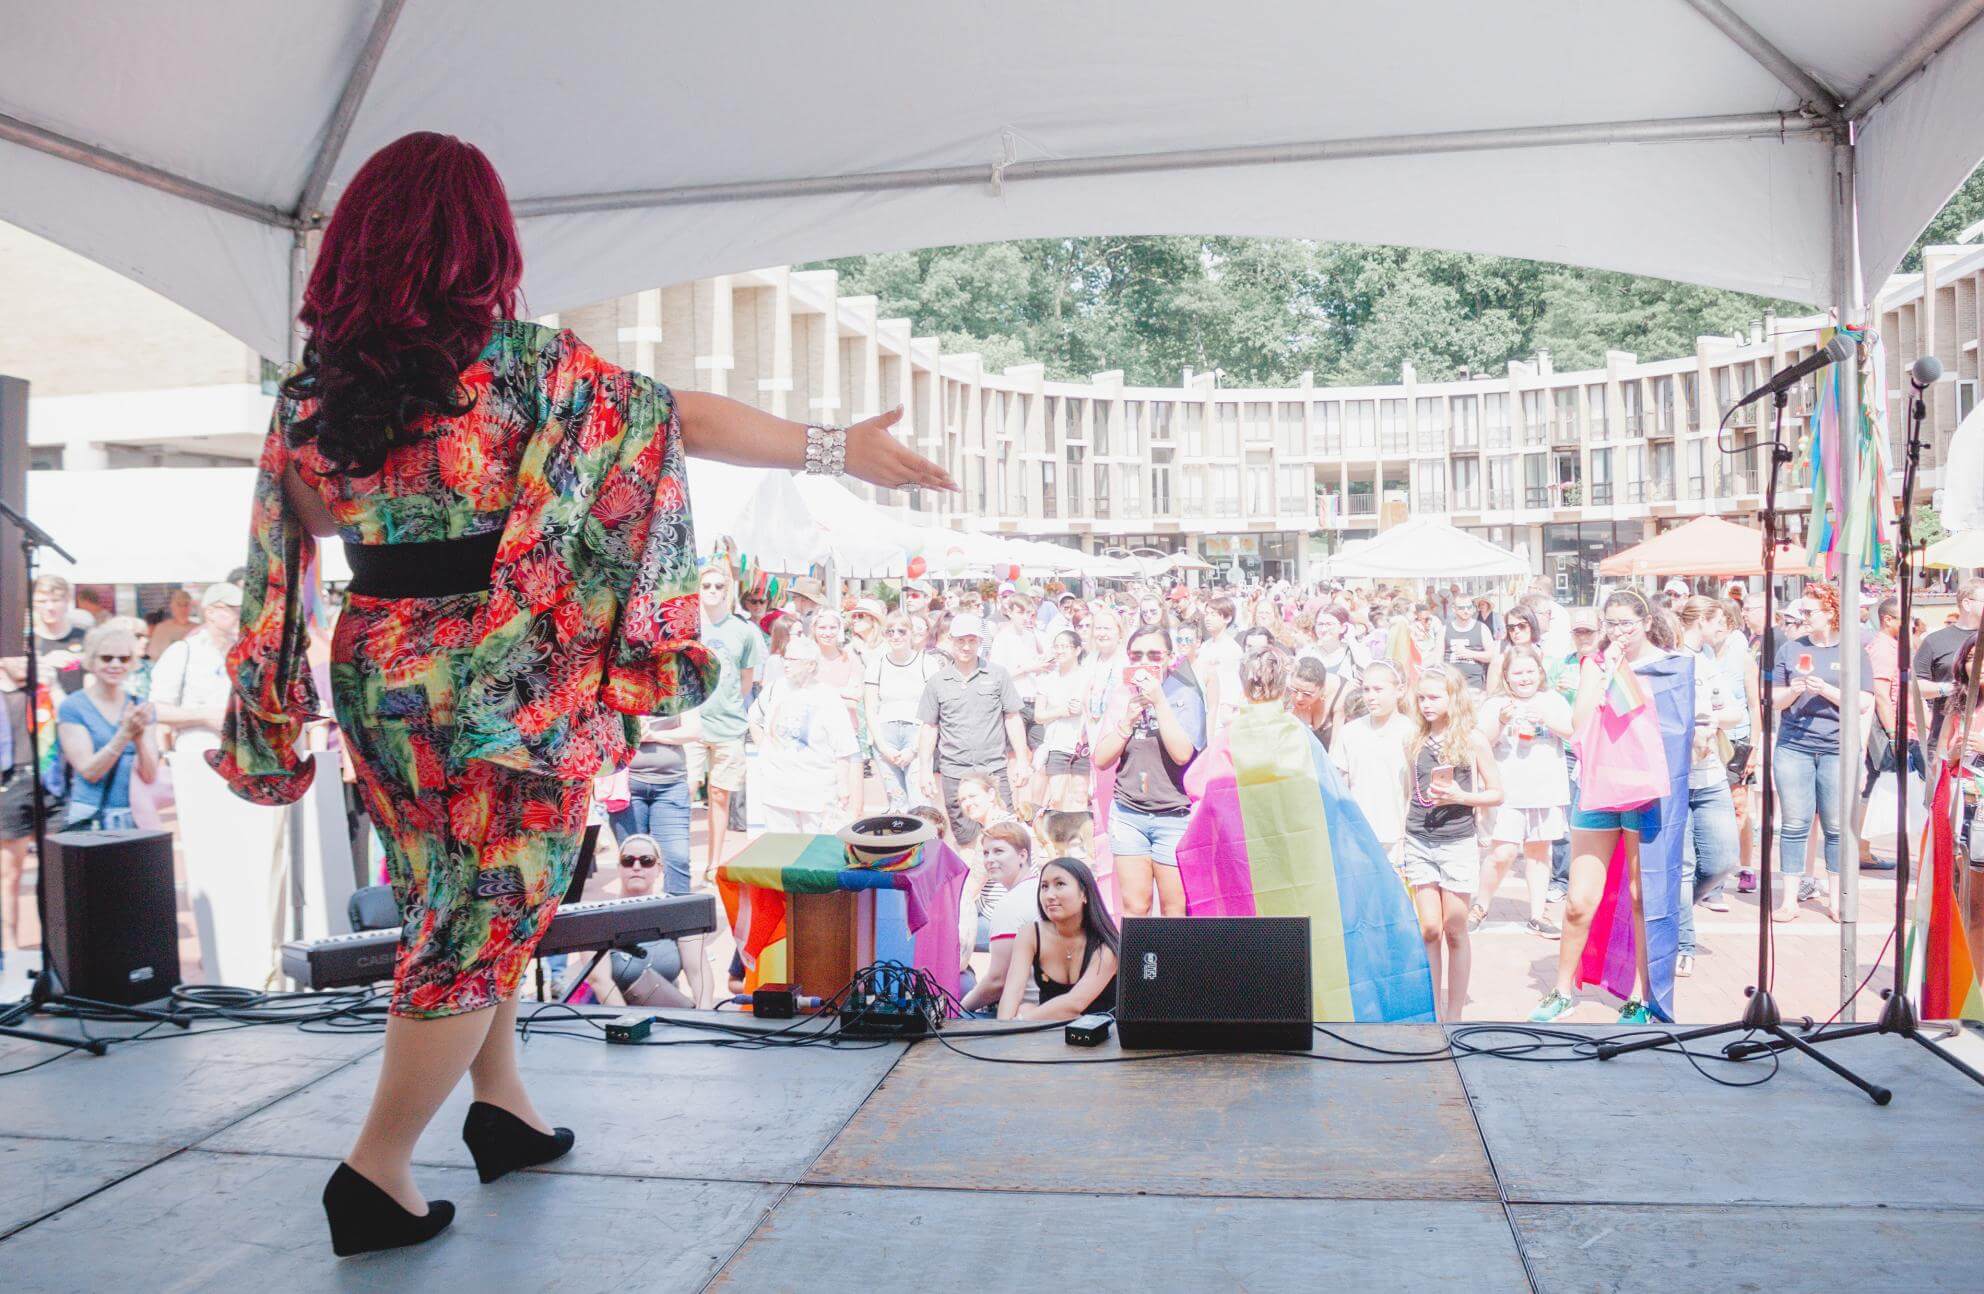 Breakthrough Virginia congregation builds community through Pride UU